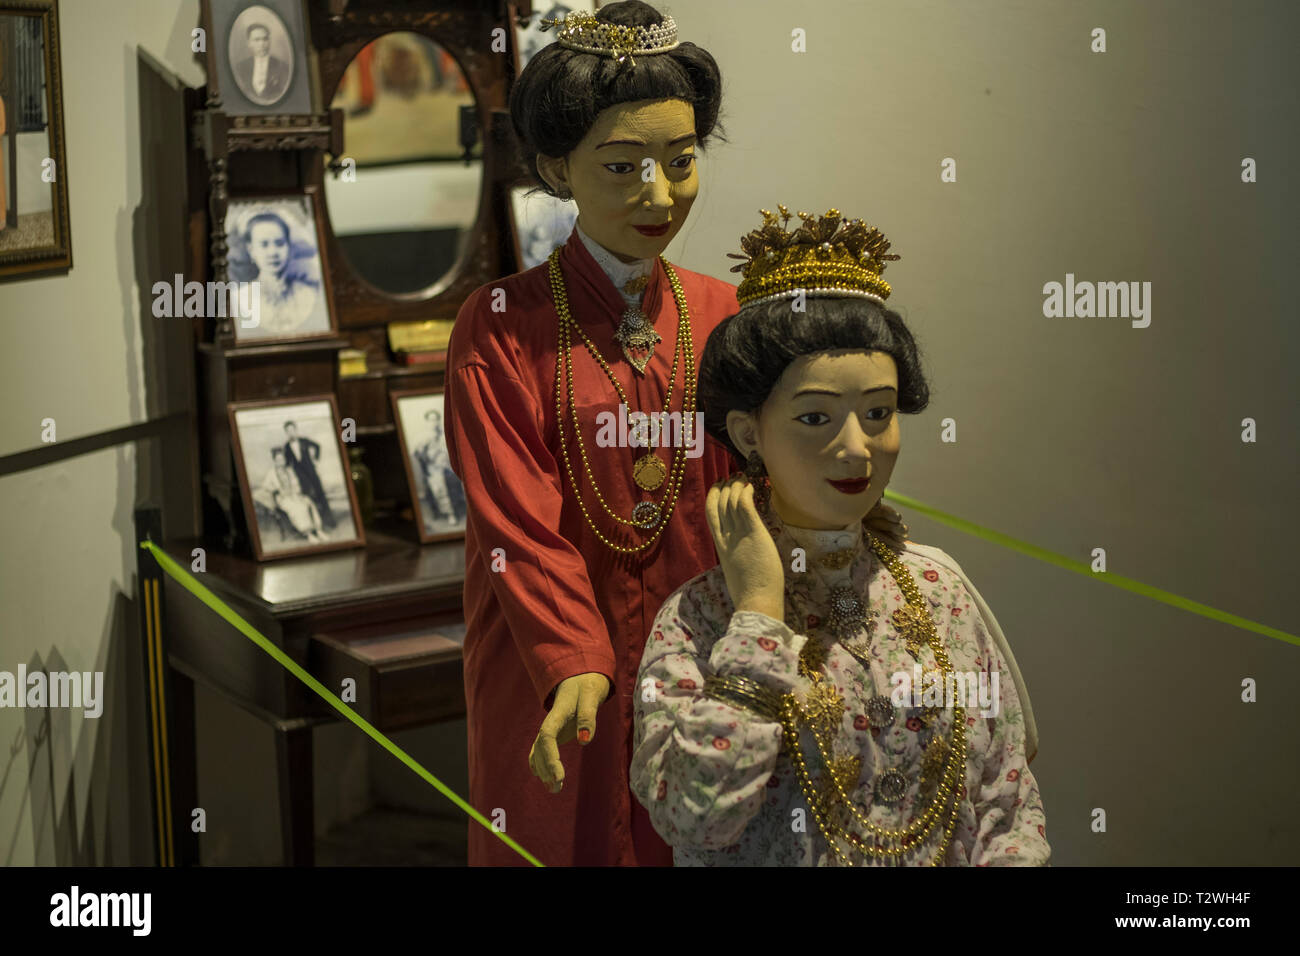 Los tradicionales trajes de Phuket Phuket Taihua aparezcan en el museo, un museo de los chinos de ultramar en Phuket, Tailandia. Foto de stock